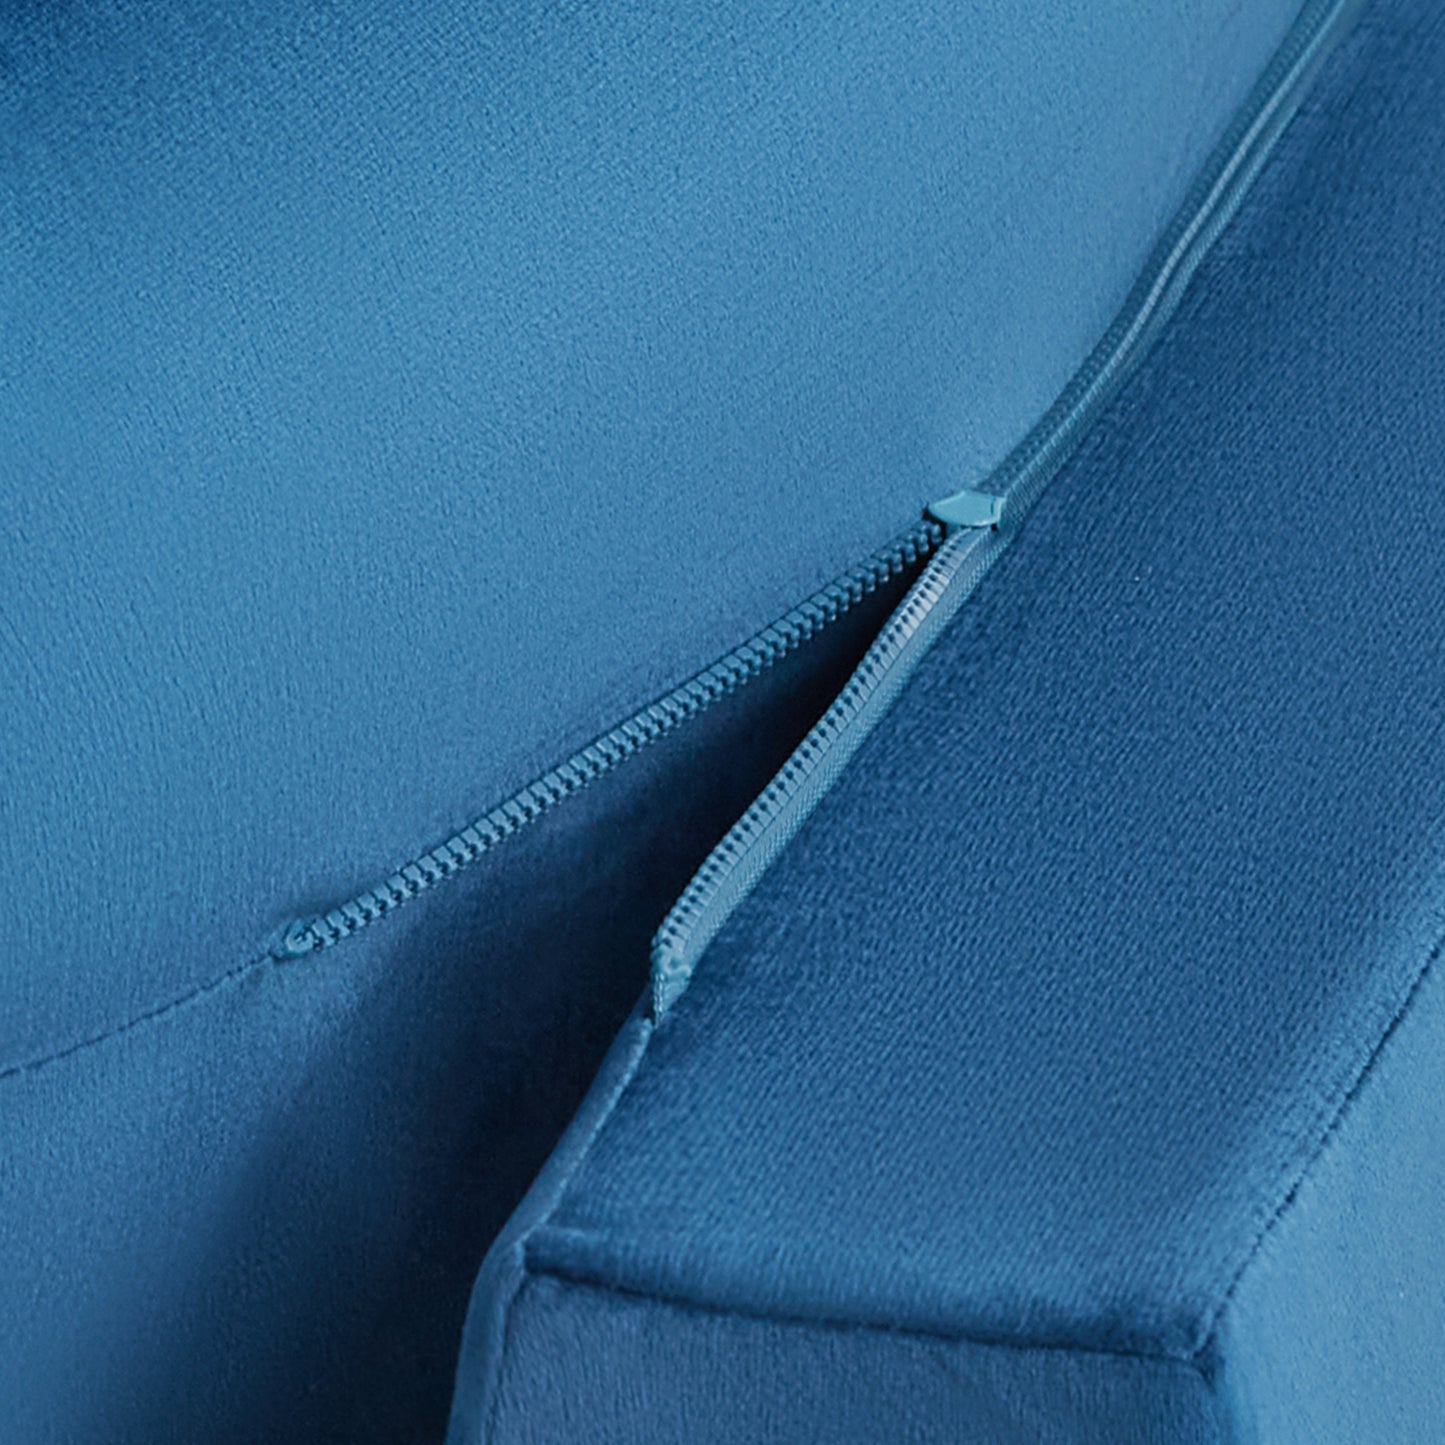 6 Seater-U shape / Blue